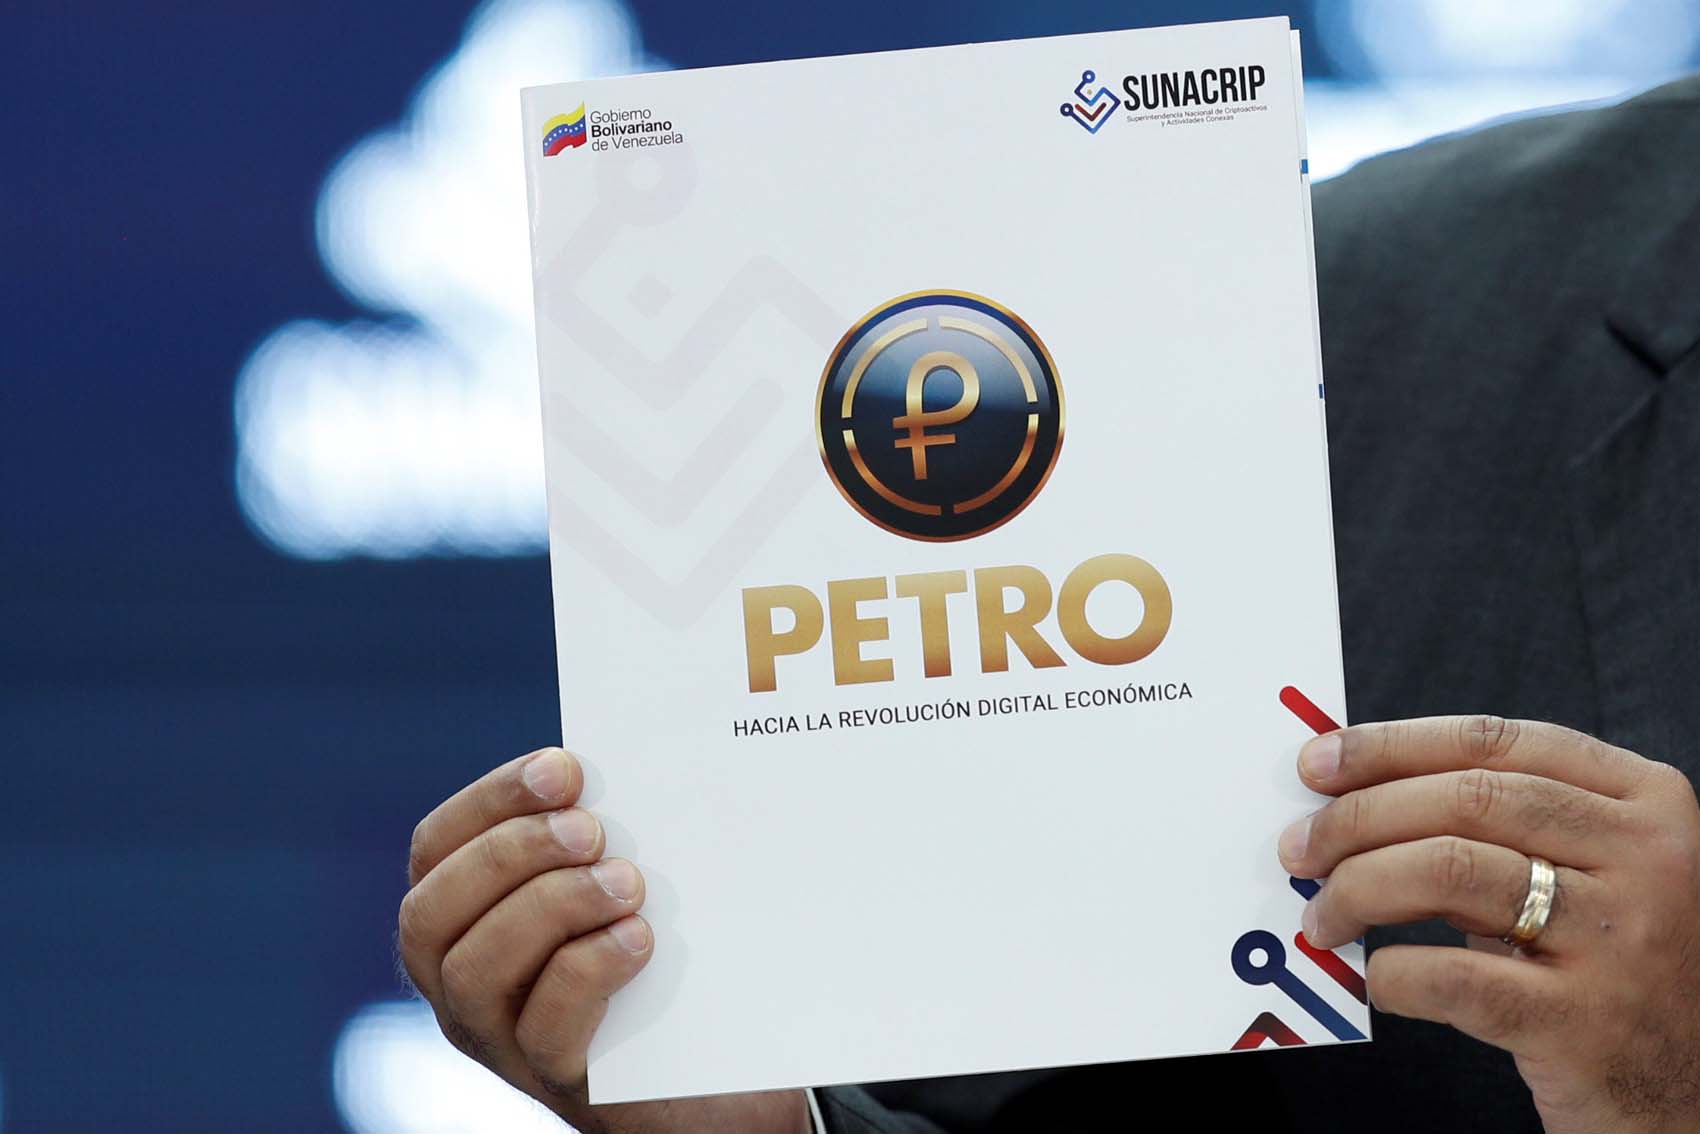 Contadores Públicos de Venezuela advierte que aún no existen leyes sobre presentaciones en criptoactivos